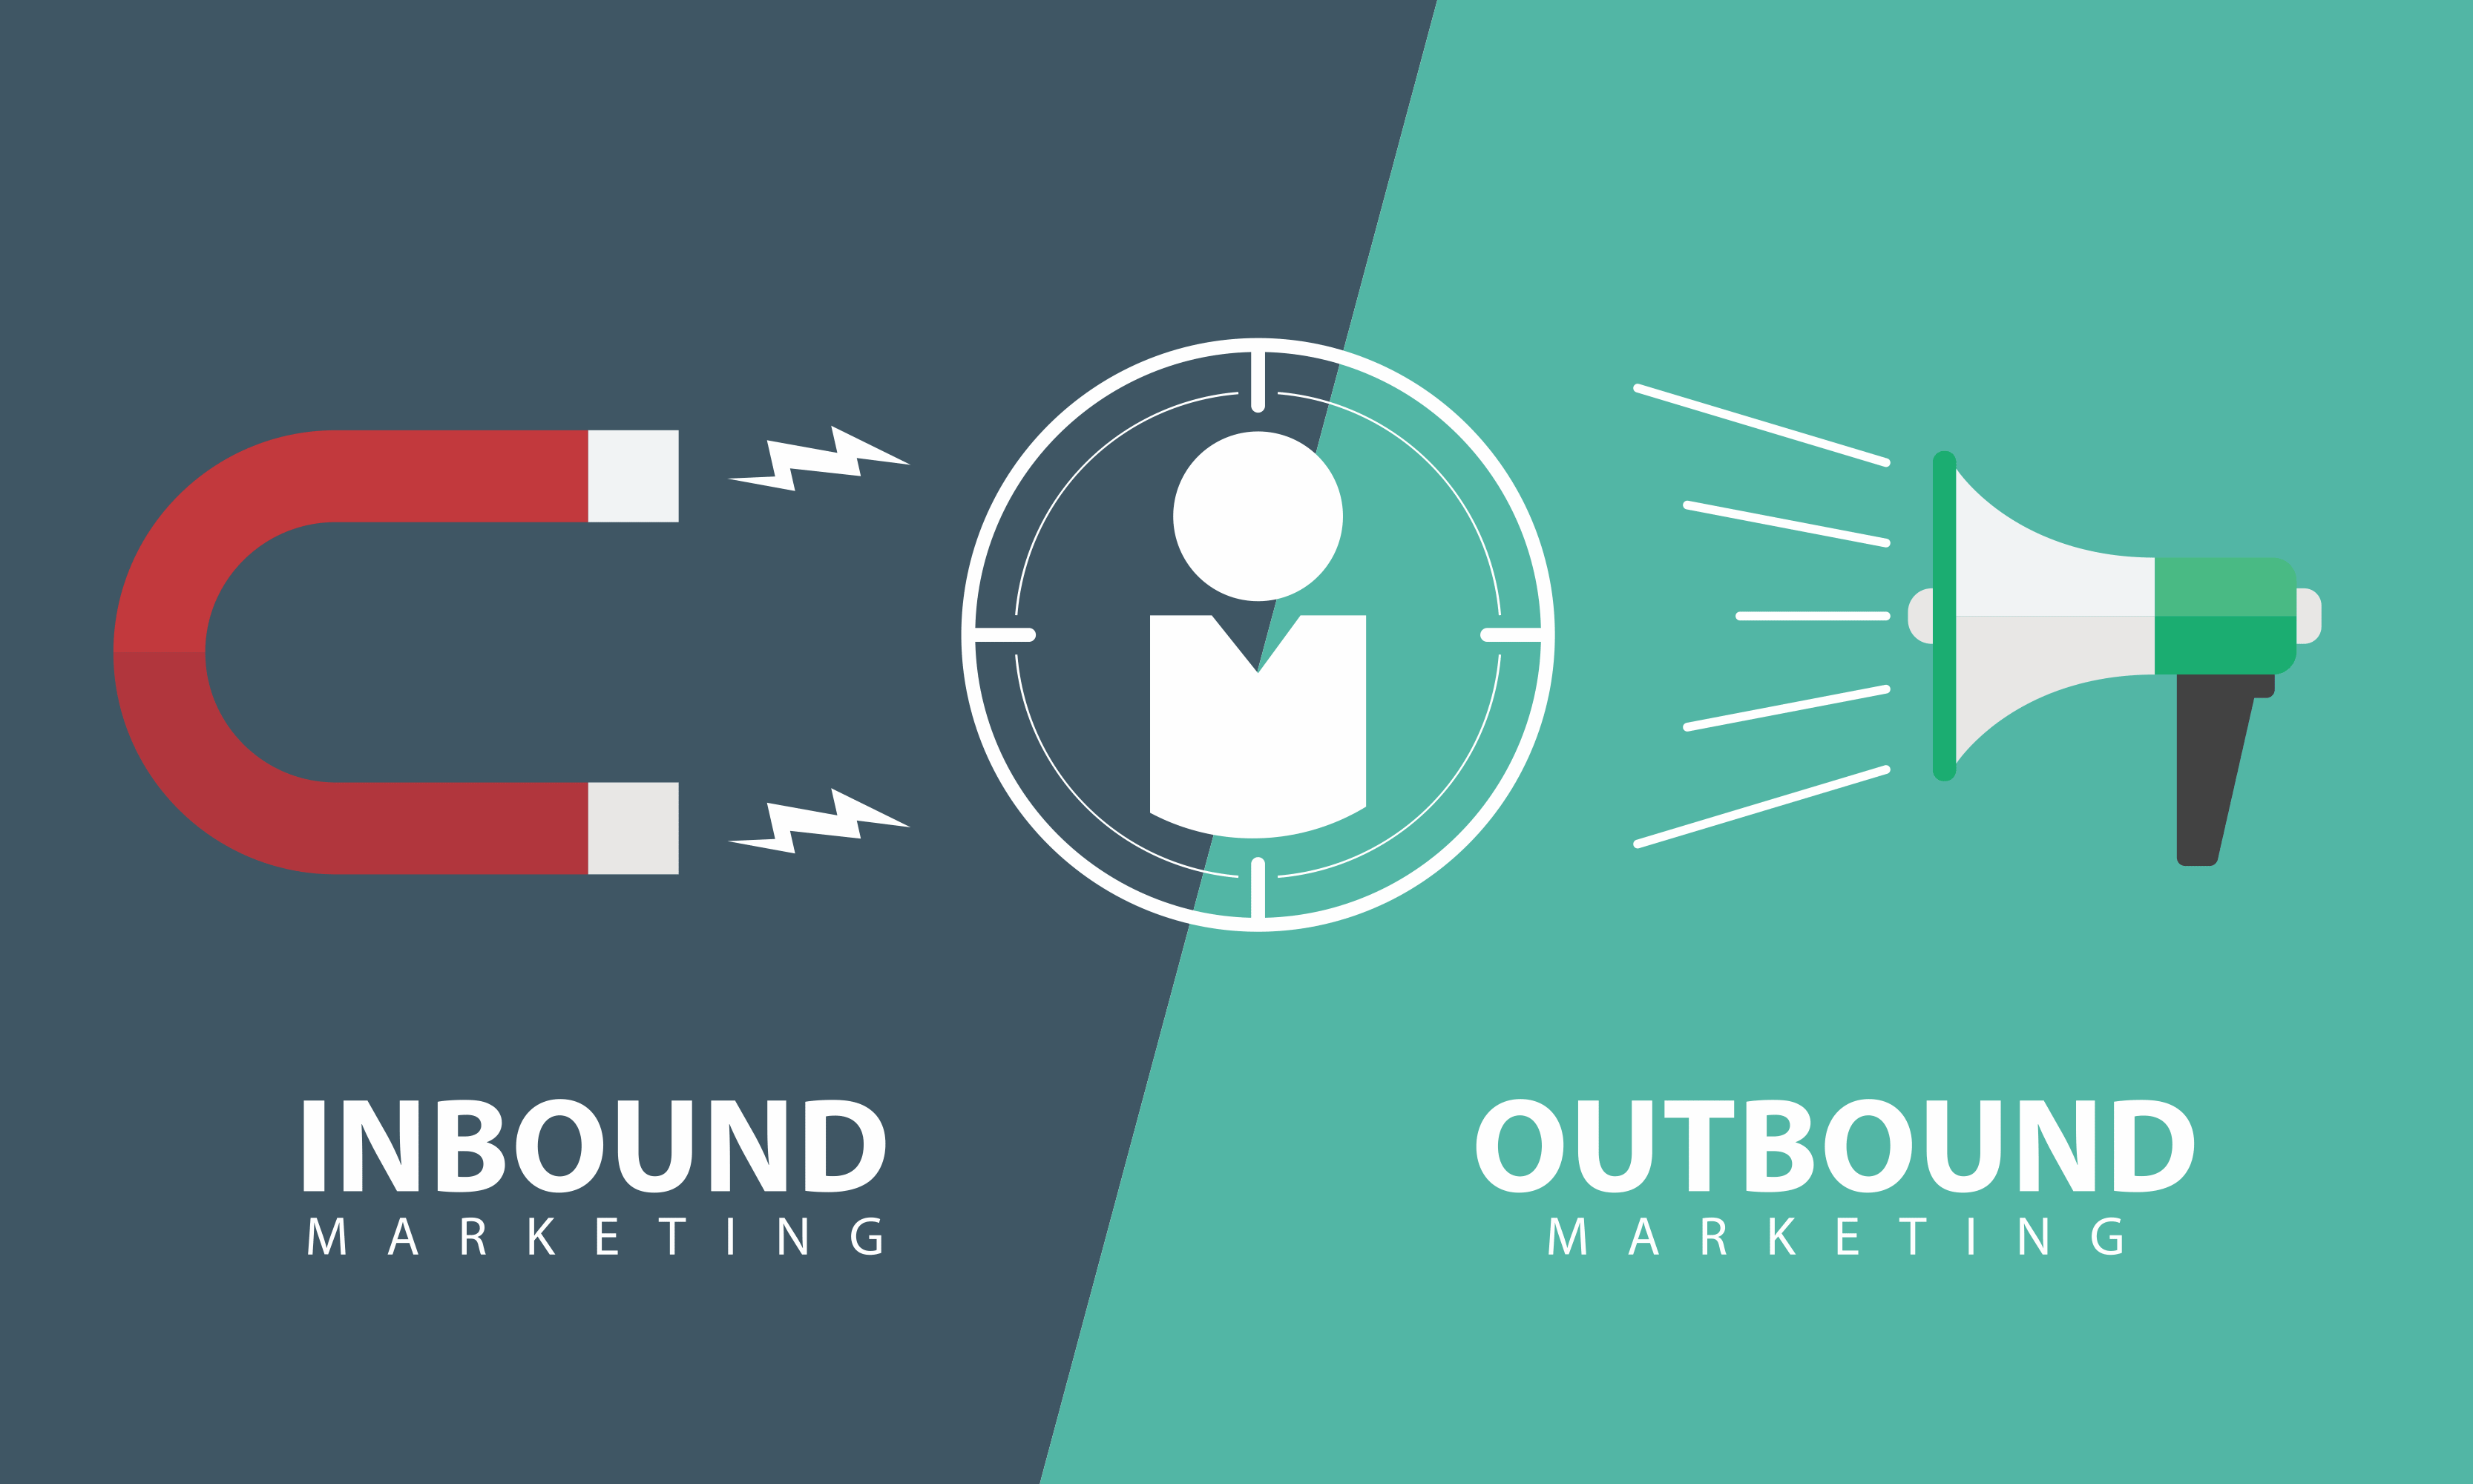 Outbound vs inbound marketing.